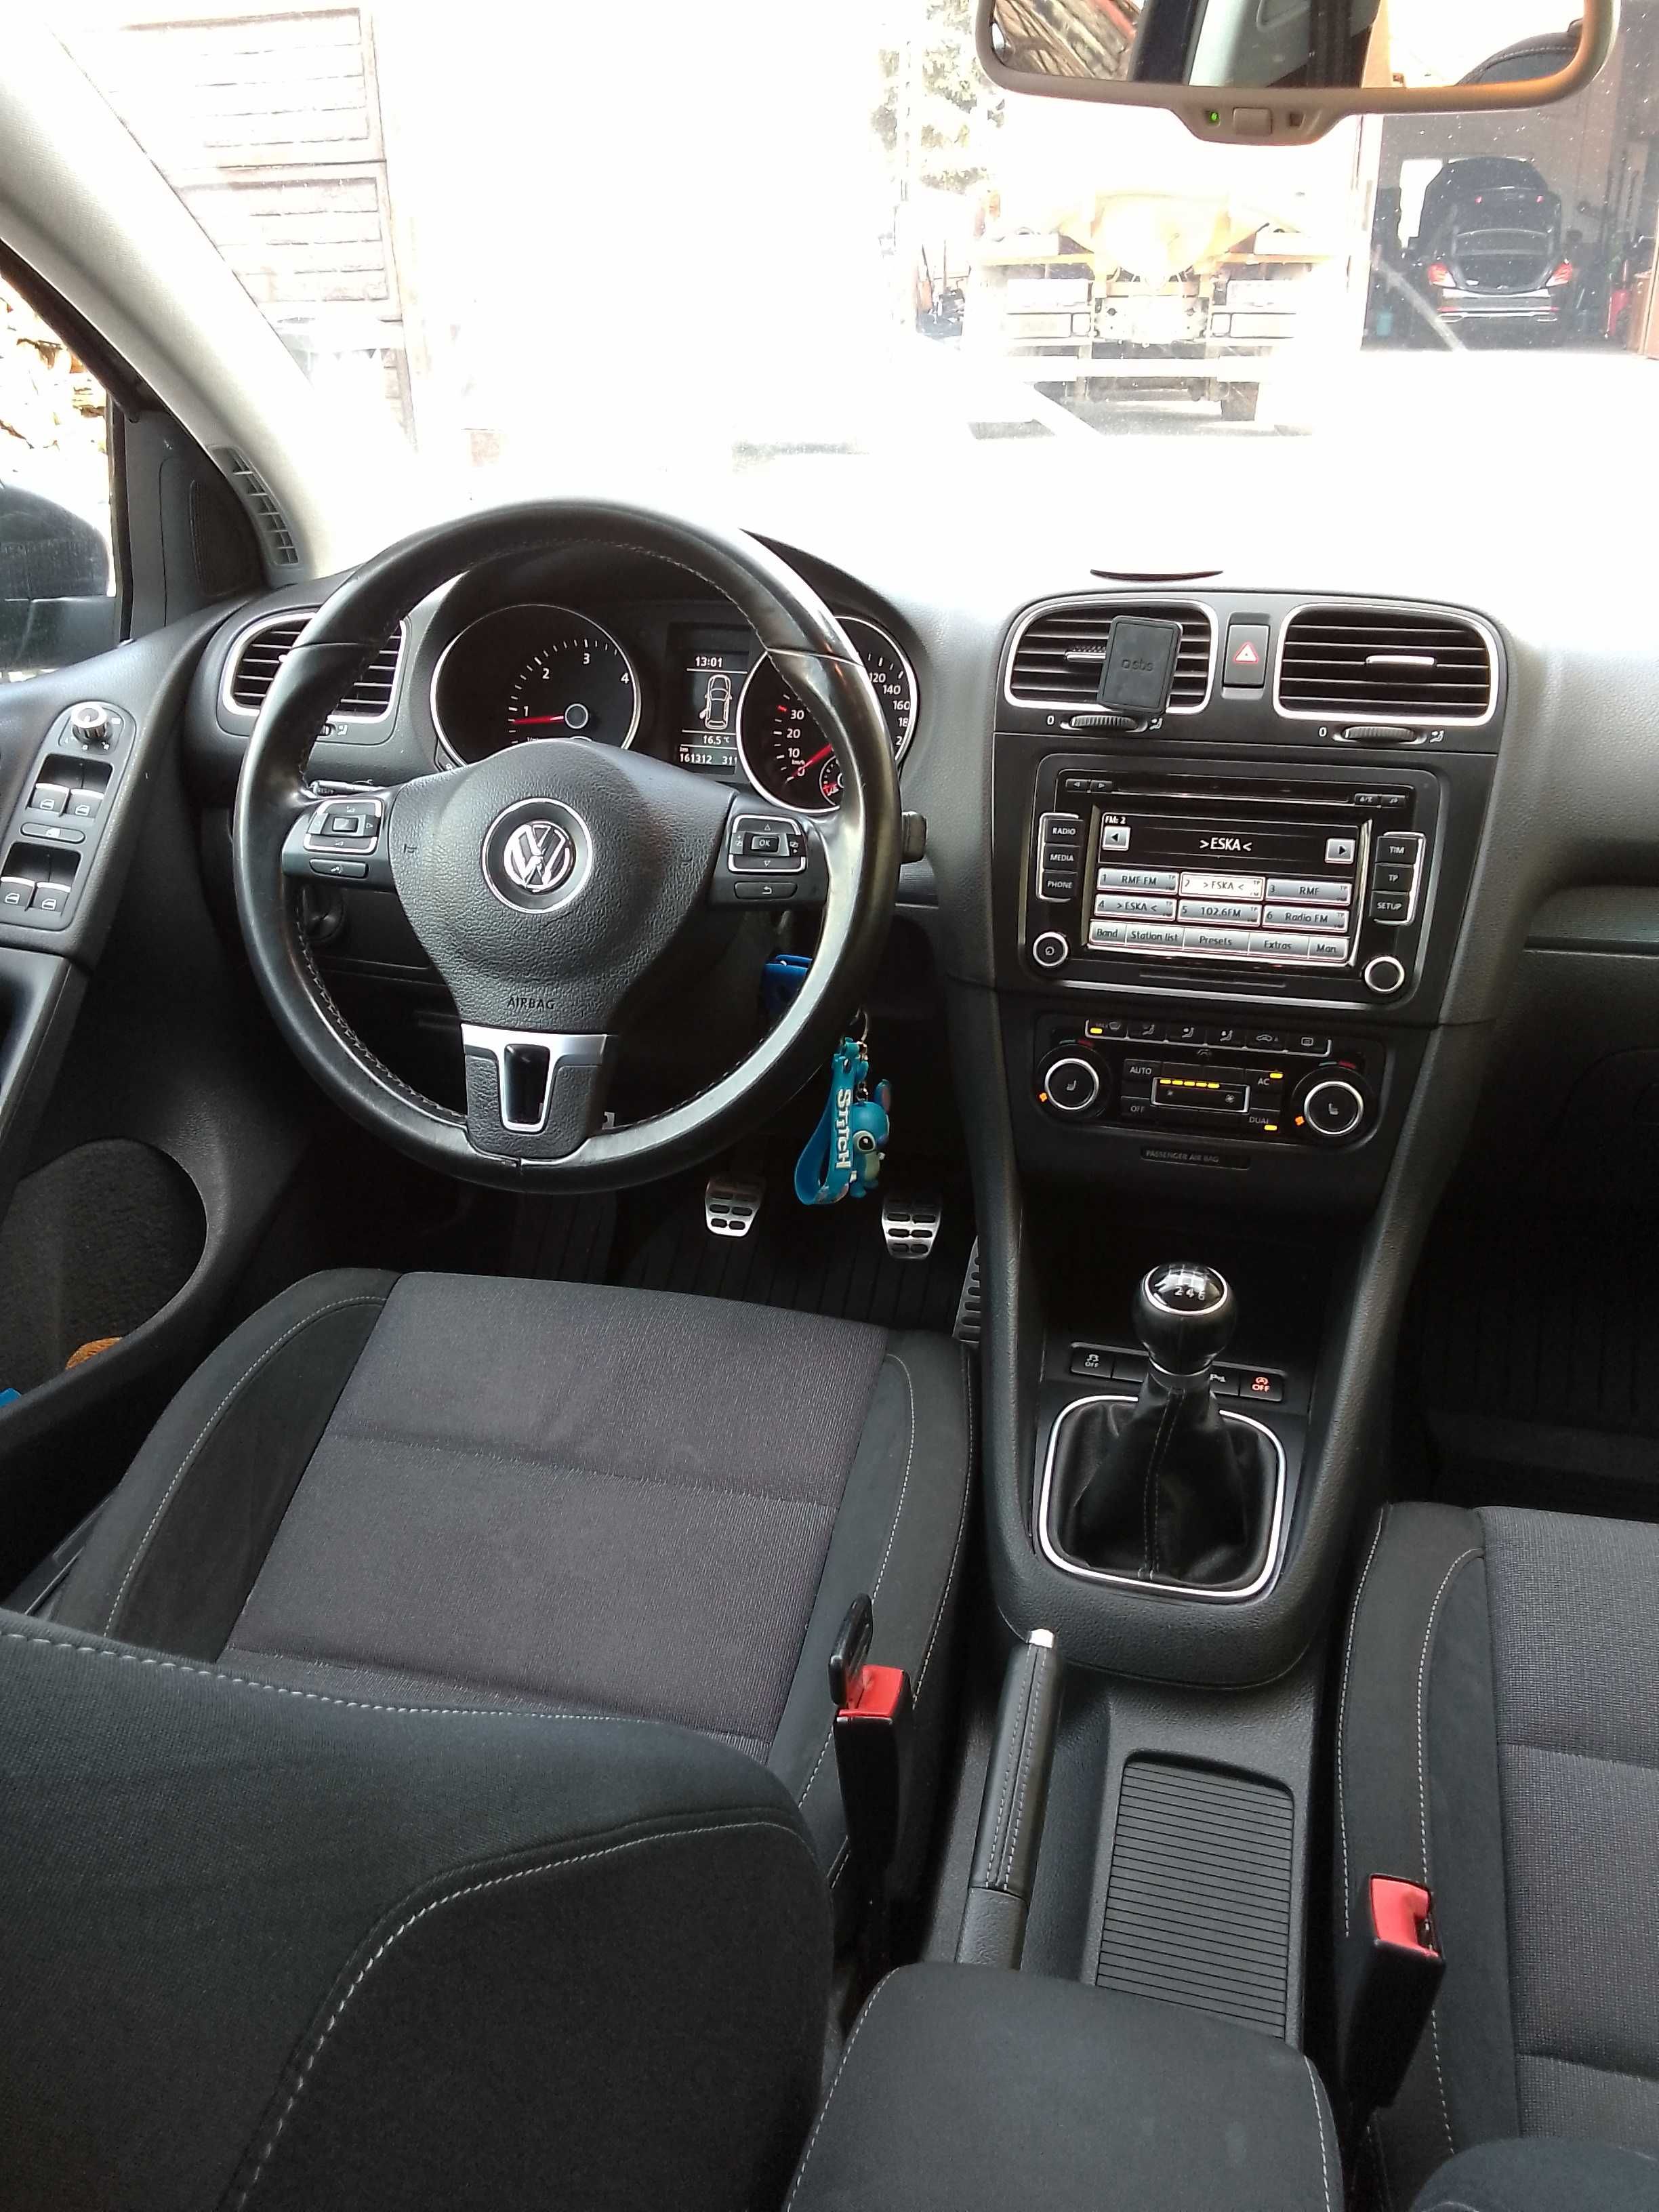 VW Golf VI,2.0 tdi,140 KM,6 biegów,5 drzwi,model style, ładny,zadbany.